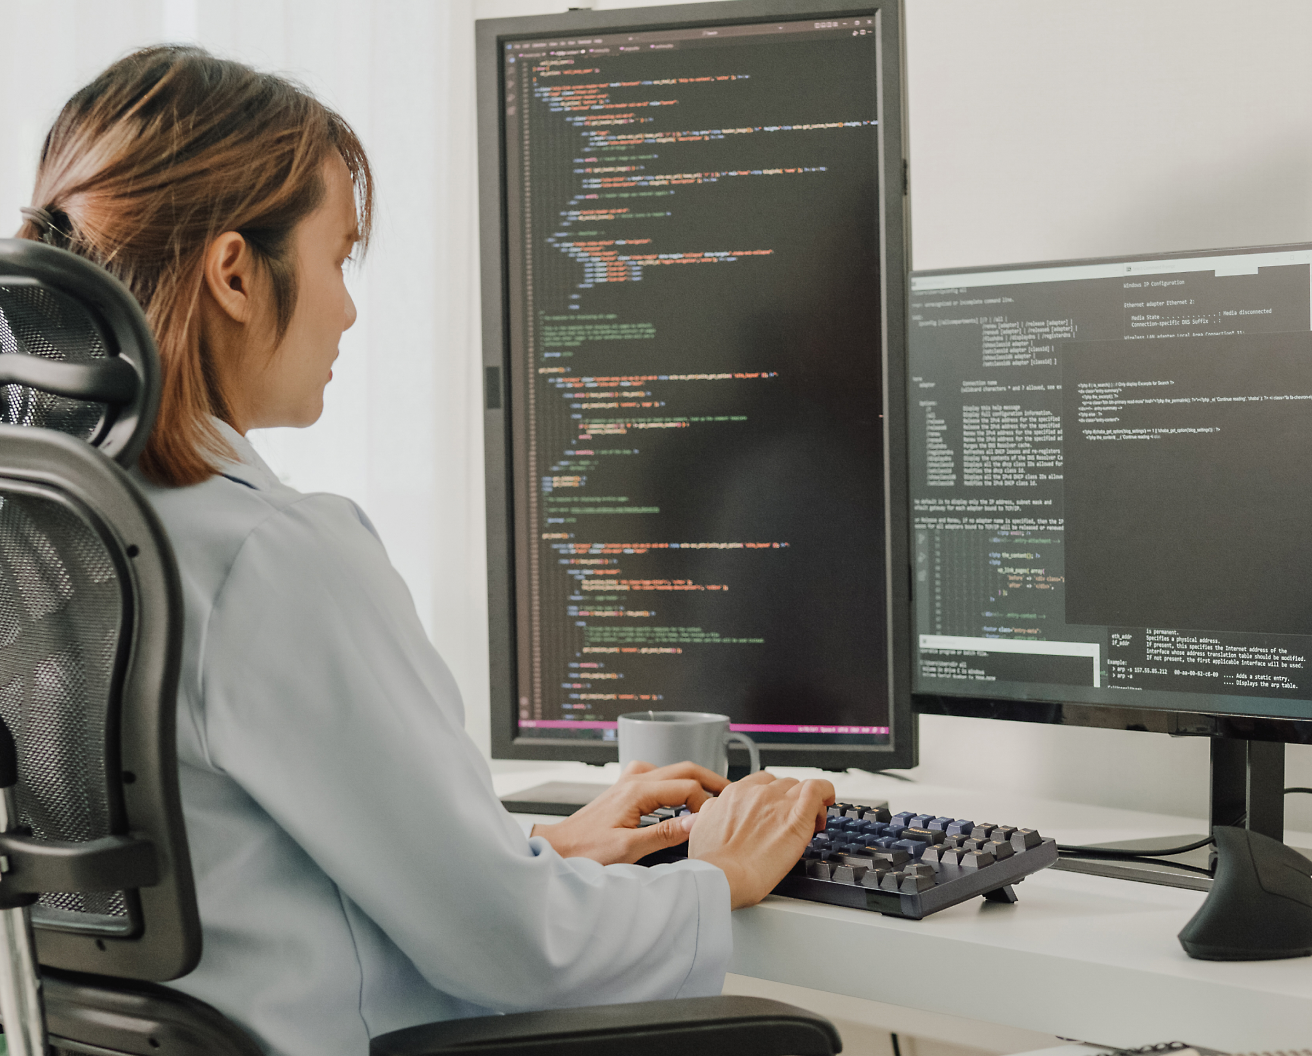 Žena sedí na kancelářské židli a programuje na počítači s několika obrazovkami zobrazujícími programový kód